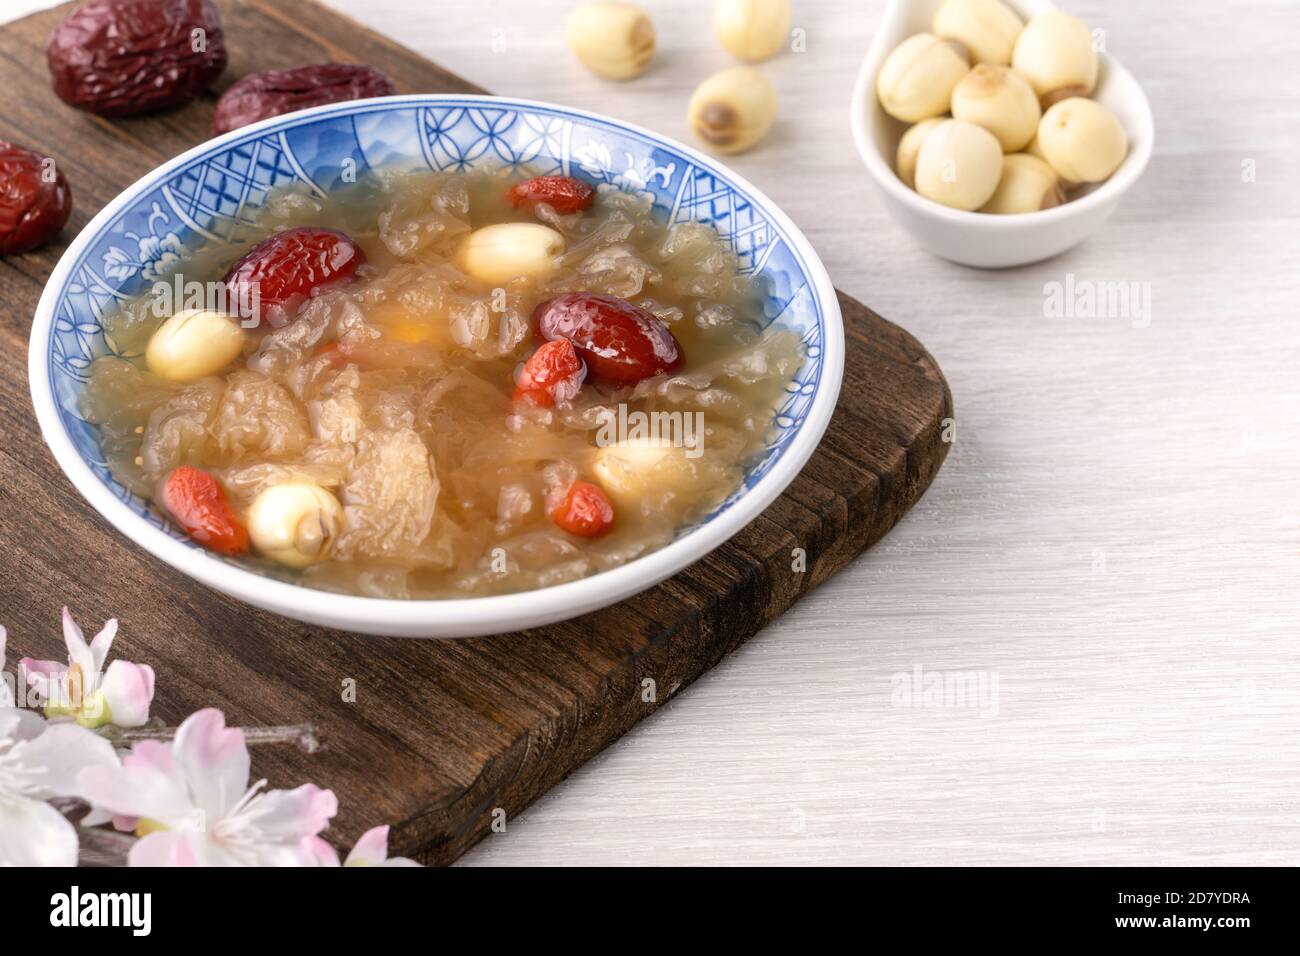 Gros plan de la soupe traditionnelle chinoise douce aux champignons blancs avec graines de lotus, dattes rouges (jujujube) et baies de carcajou (baie de goji, baie de gogyberry) sur le dos blanc Banque D'Images